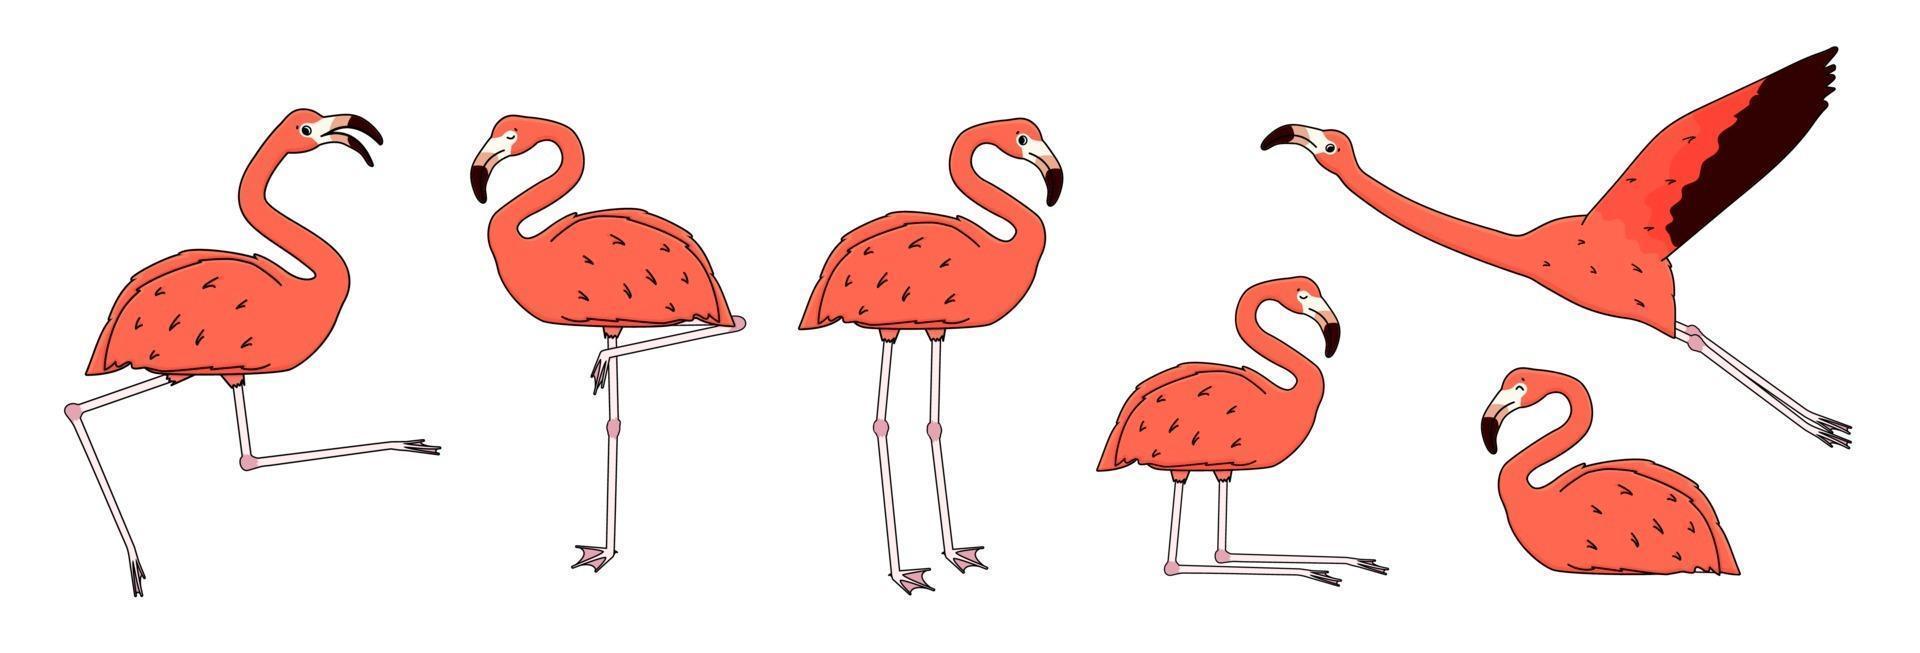 conjunto de flamingos de pêssego rosa de desenho de vetor contorno isolado no fundo branco. Doodle animal é ativo, dança, voa, alegra-se, dorme, descansa, relaxa, sonha, anda. ilustração de poses diferentes